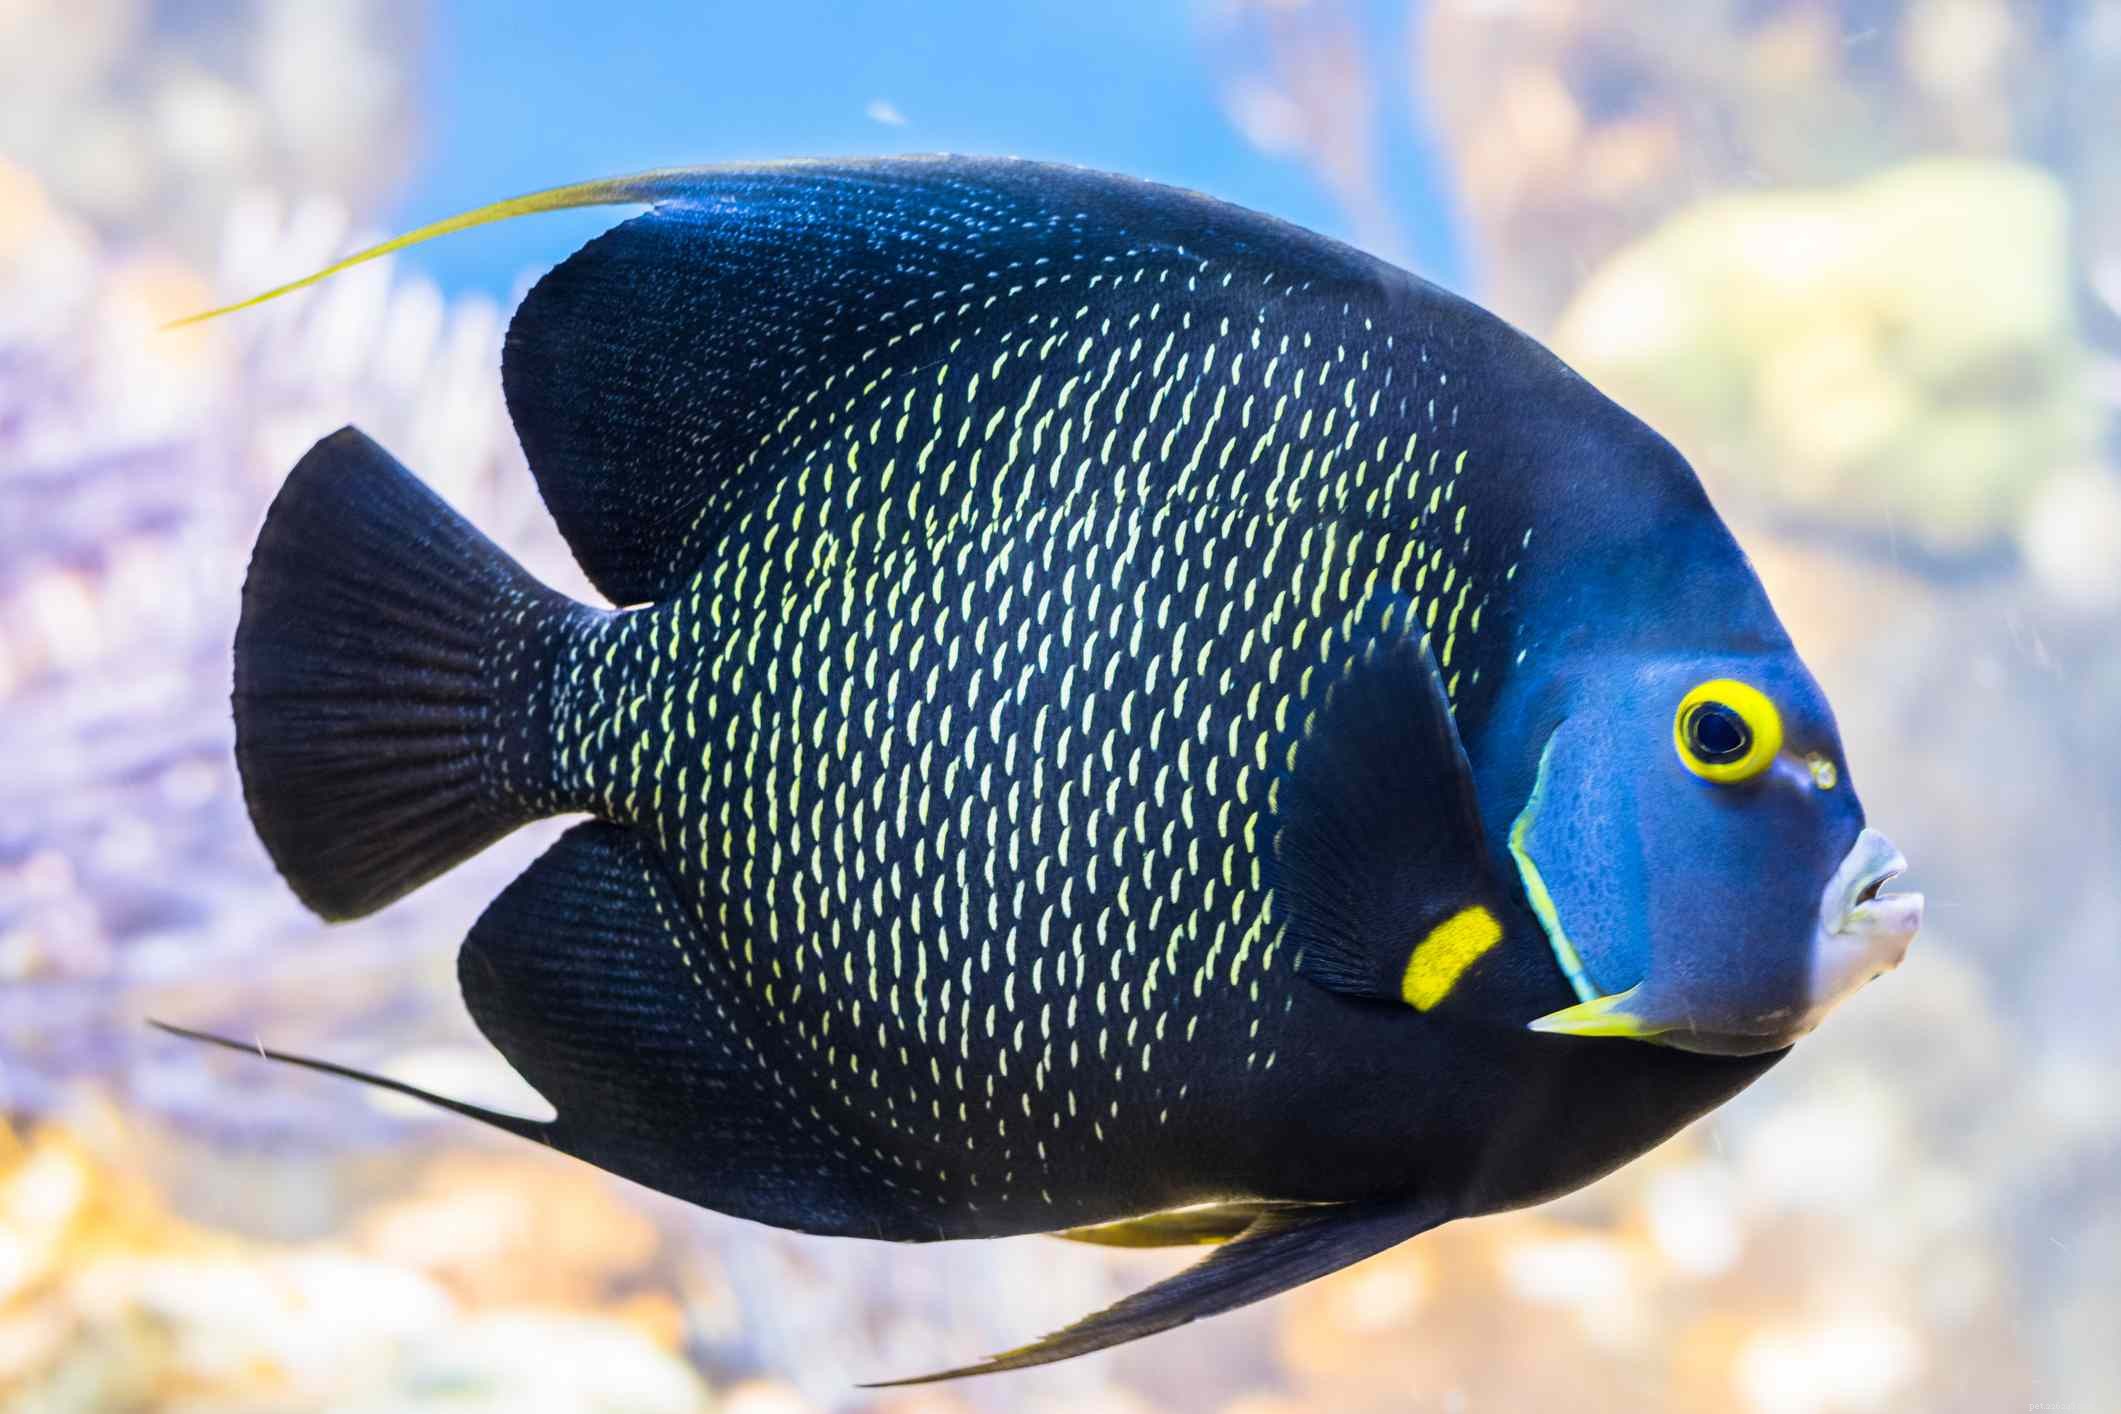 Scegliere le migliori specie di pesci angelo d acqua salata per il tuo acquario